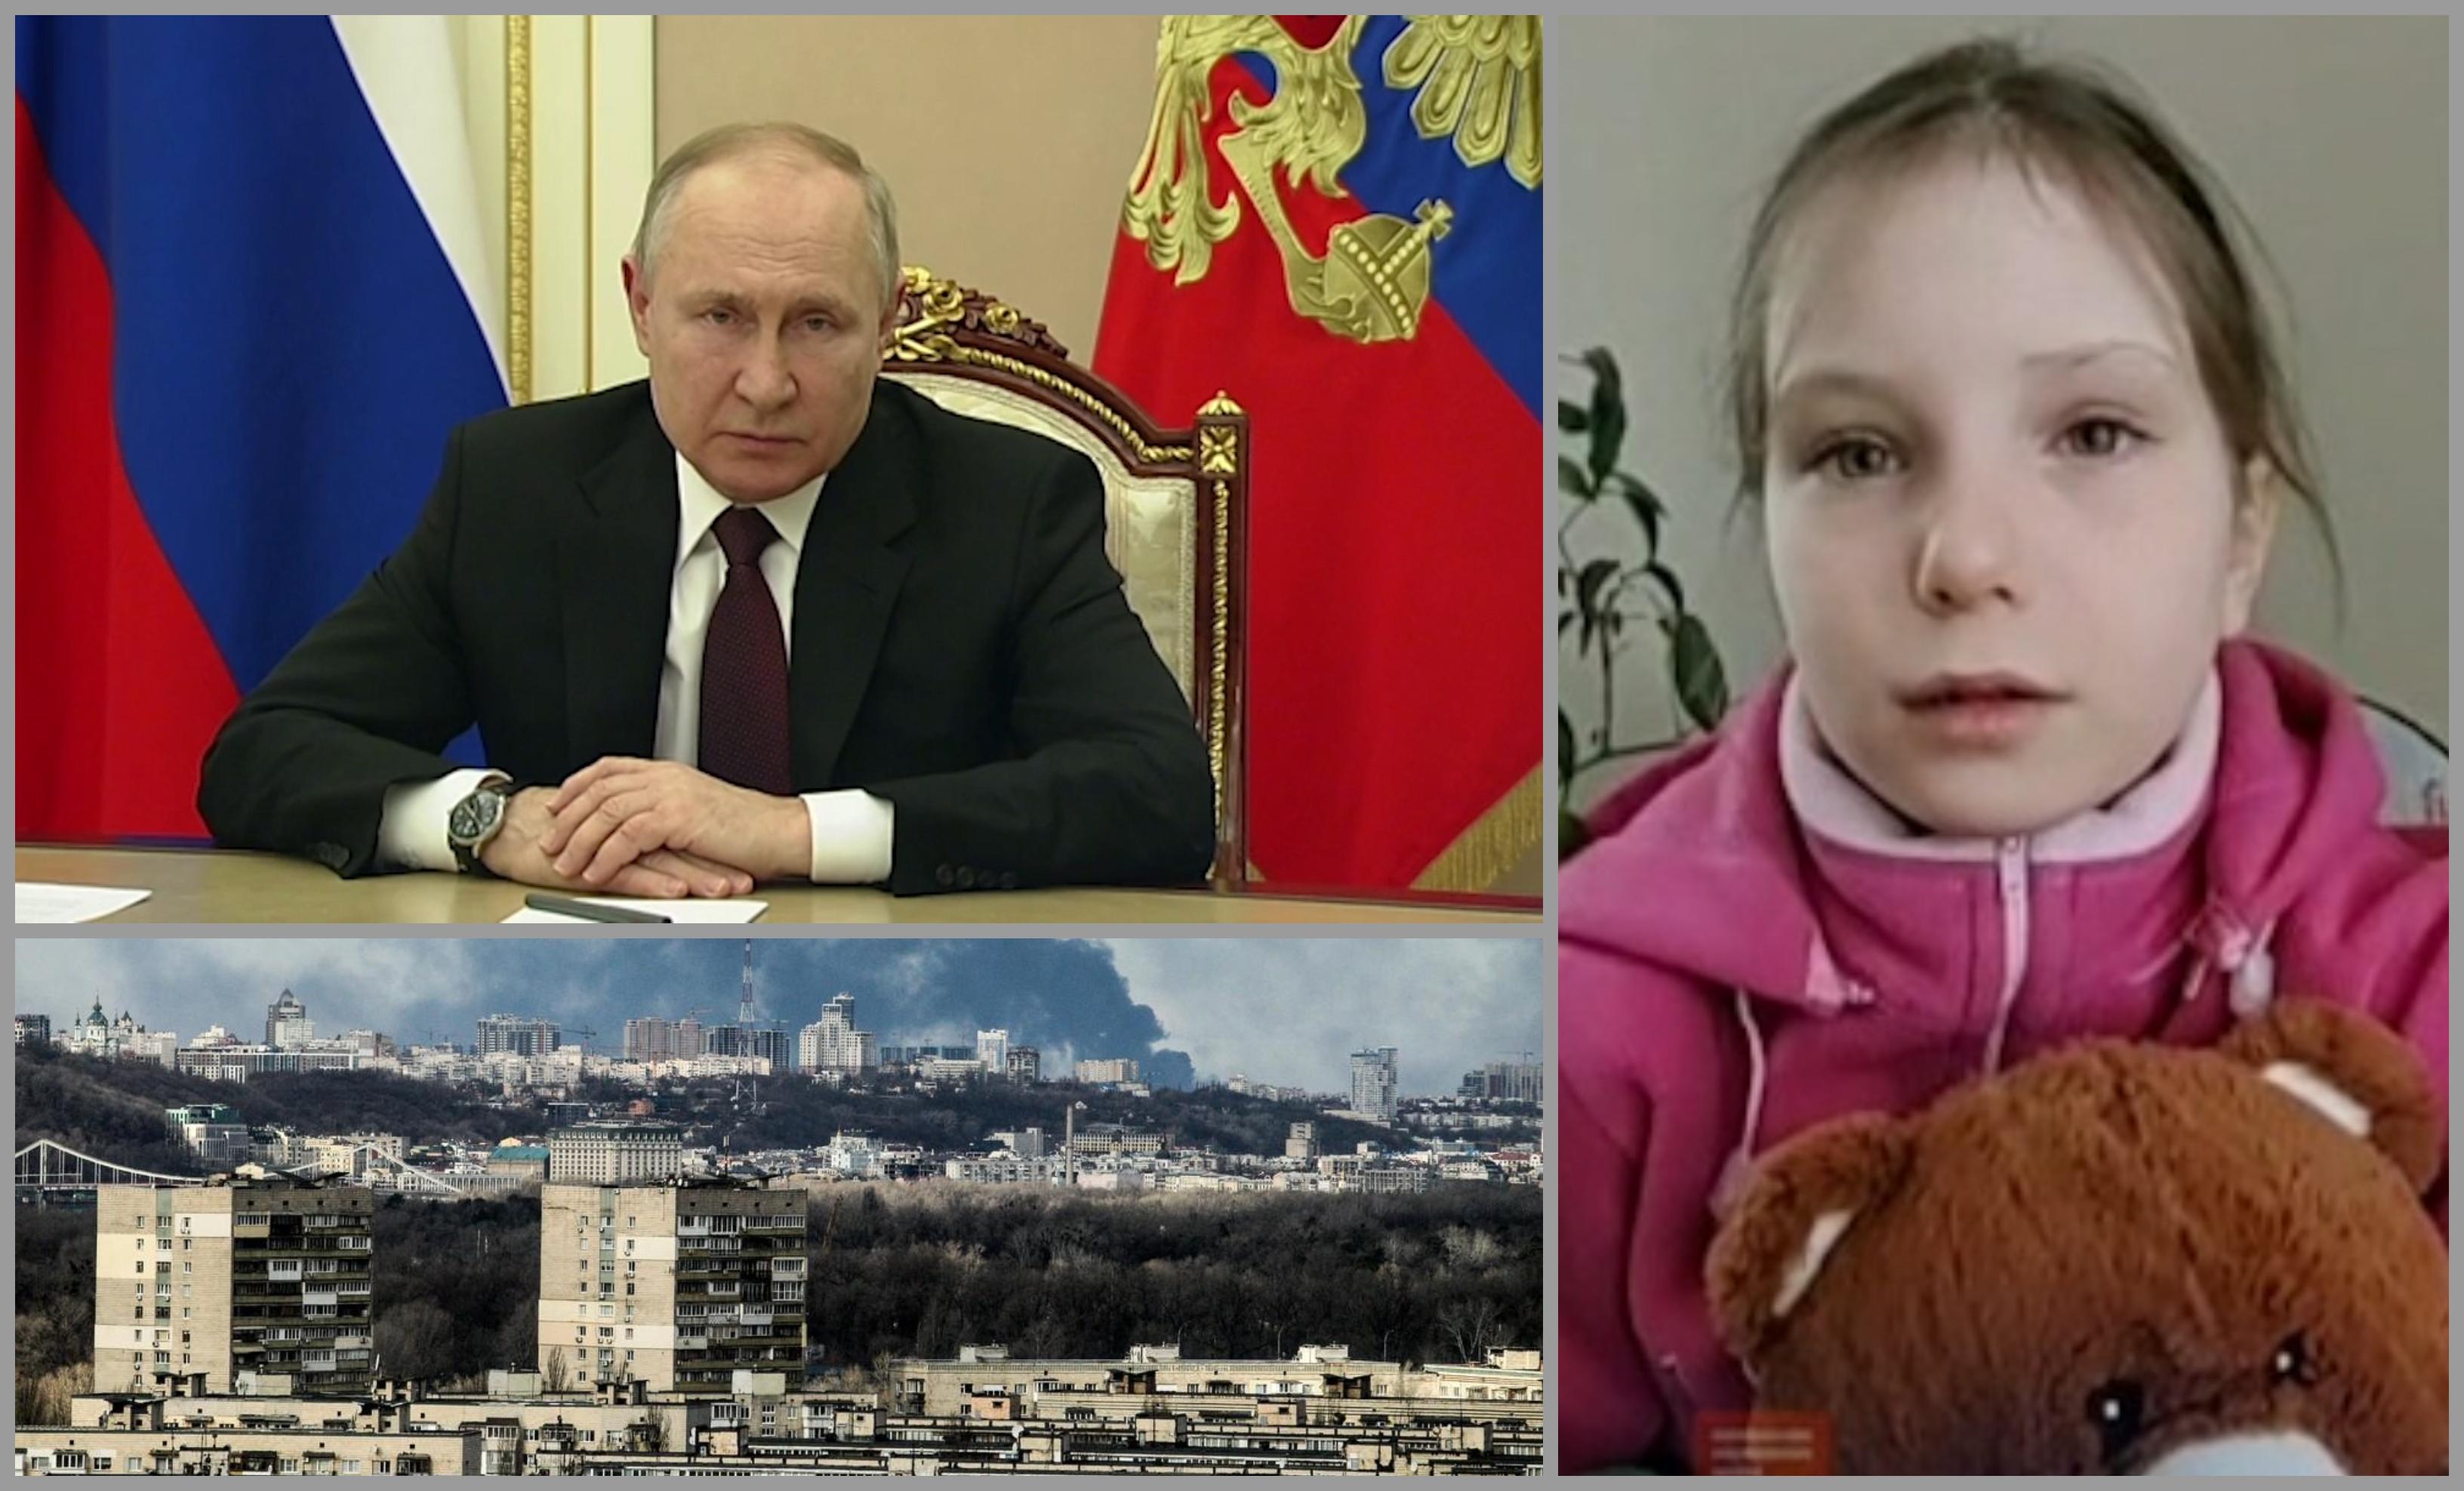 O fetiţă de 6 ani din Ucraina îi cere lui Vladimir Putin să lase Ucraina în pace